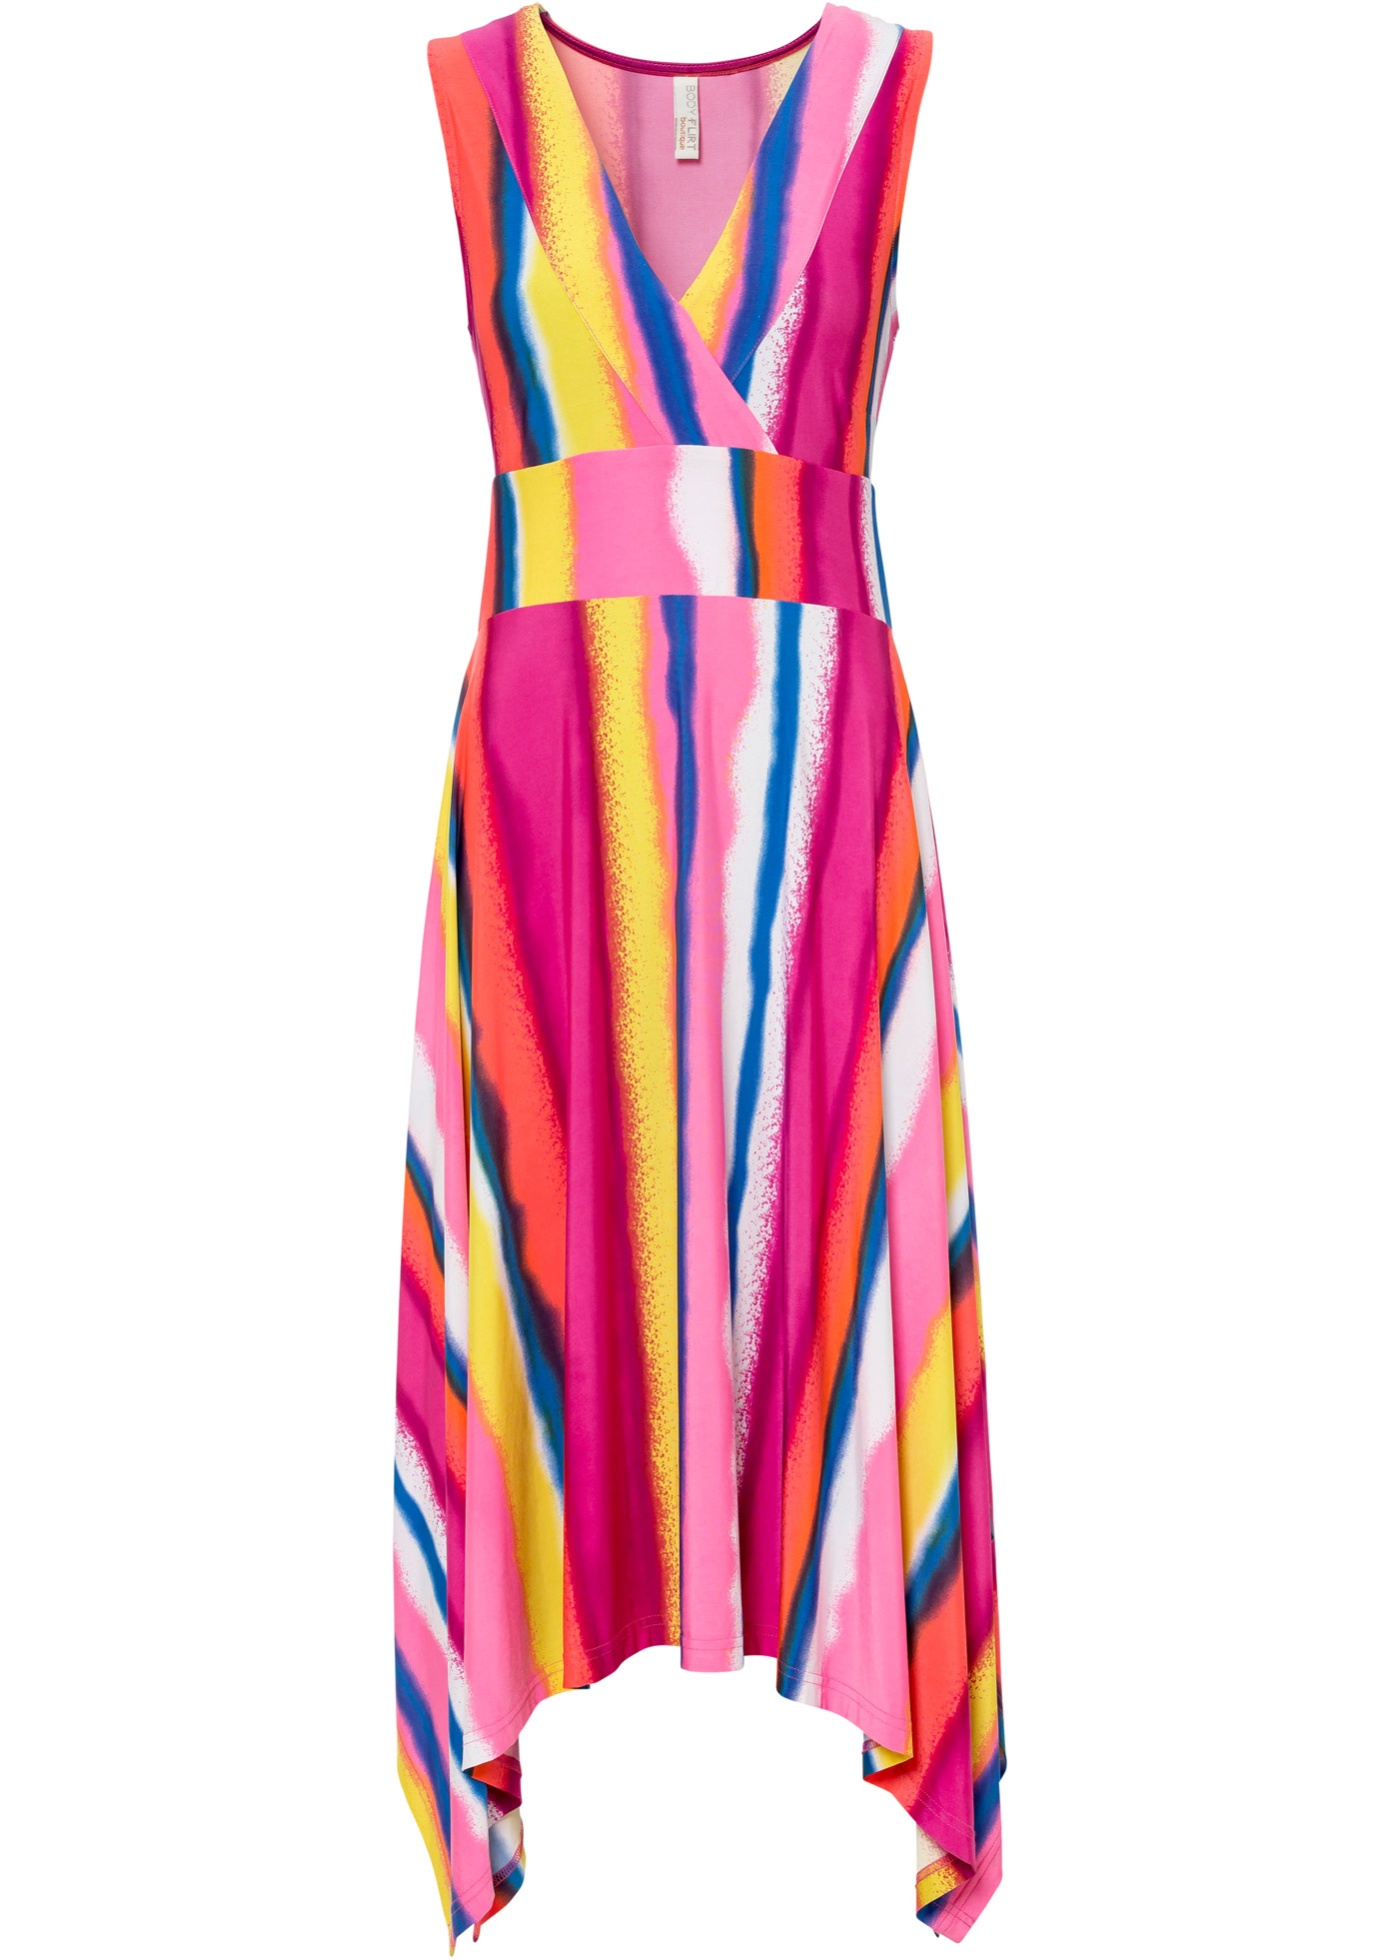 Zipfelkleid mit tiefem Ausschnitt im schönen Streifendesign (93517095) in pink/gelb/blau/weiß gestreift